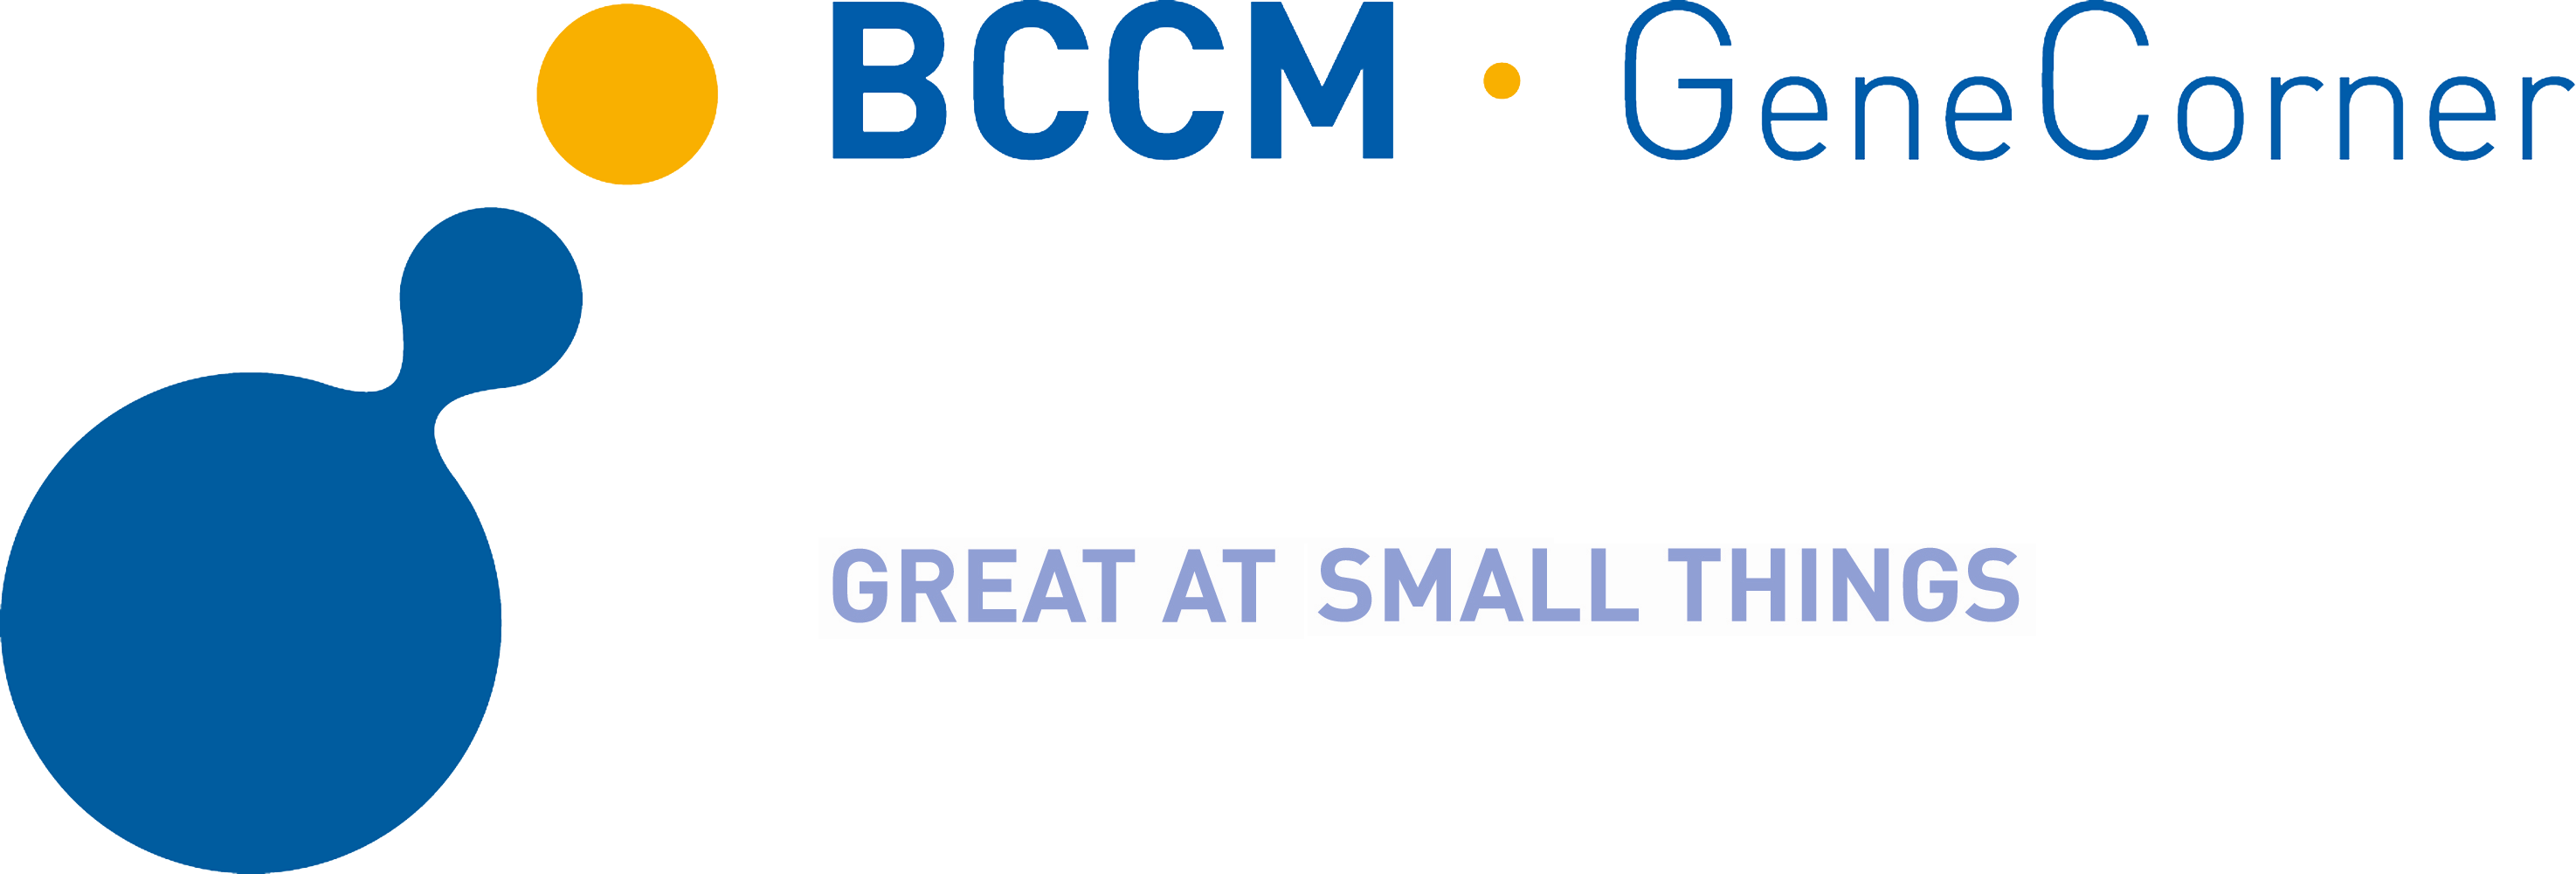 2018-09/bccm-gene-corner-slogan.png